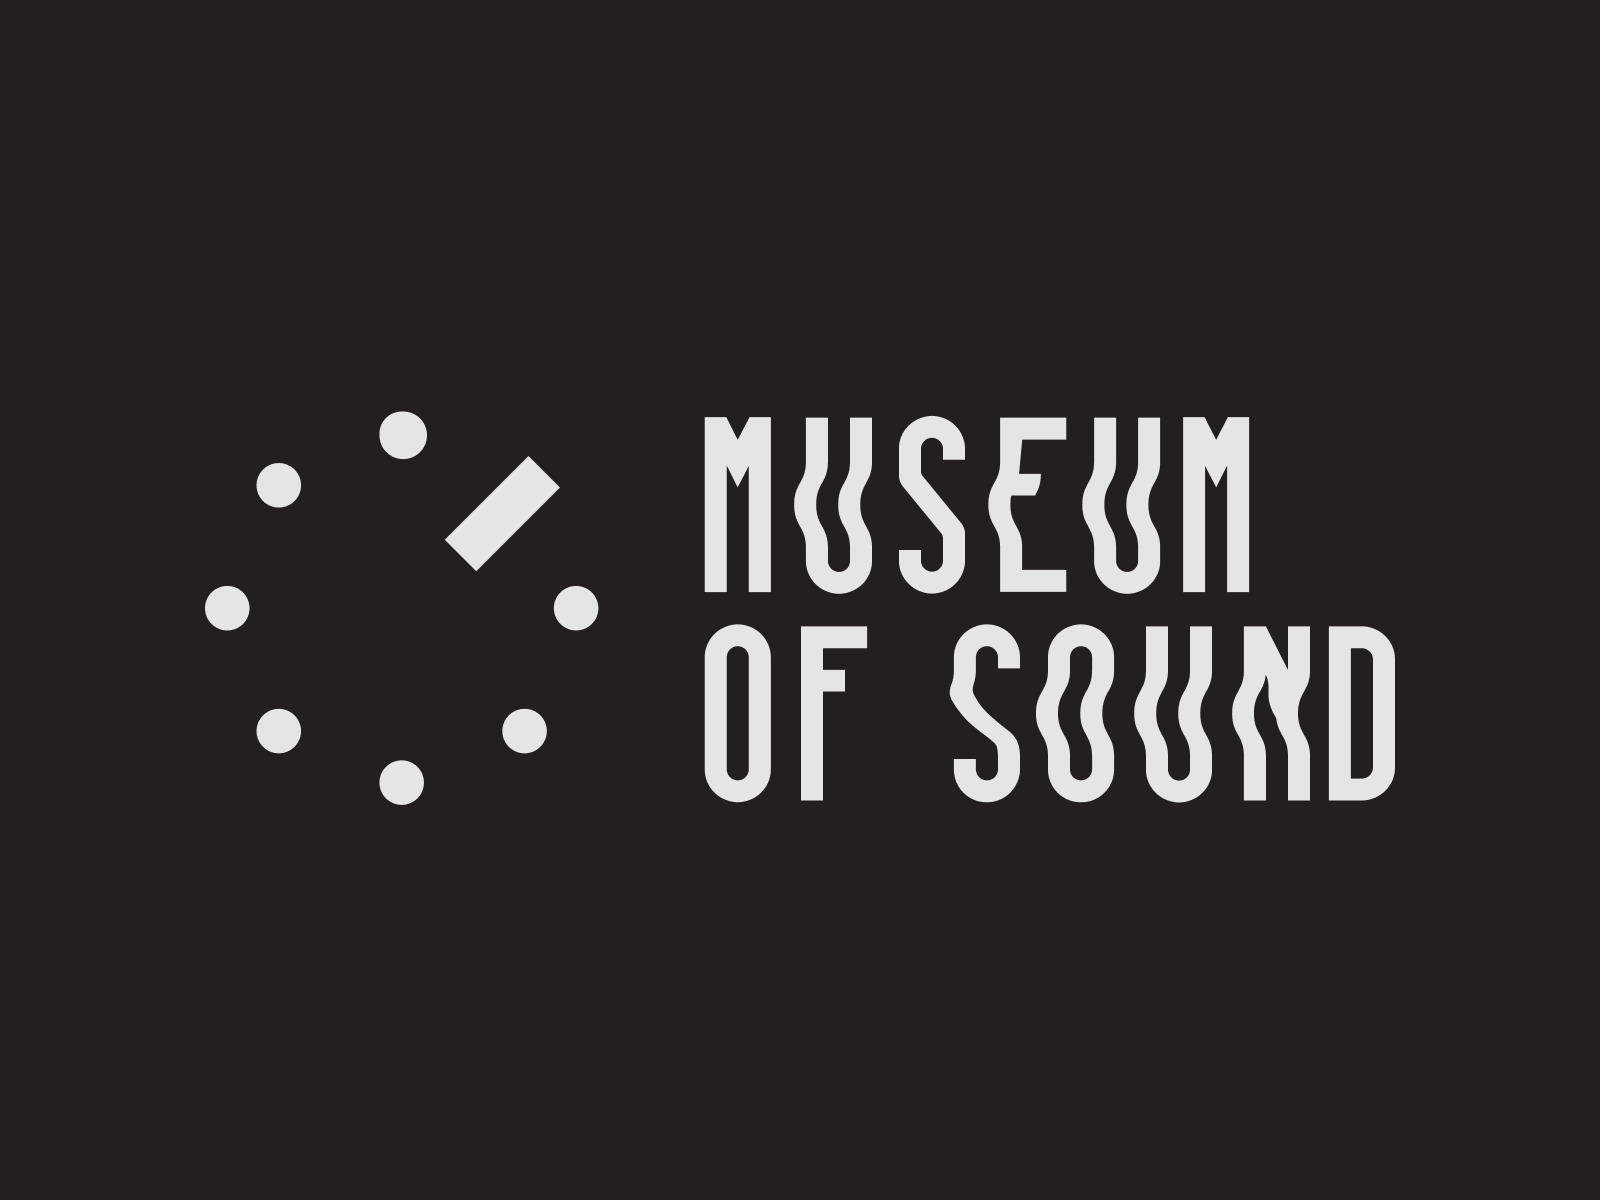 Logo | Museum of Sound by Julia Shtefan on Dribbble